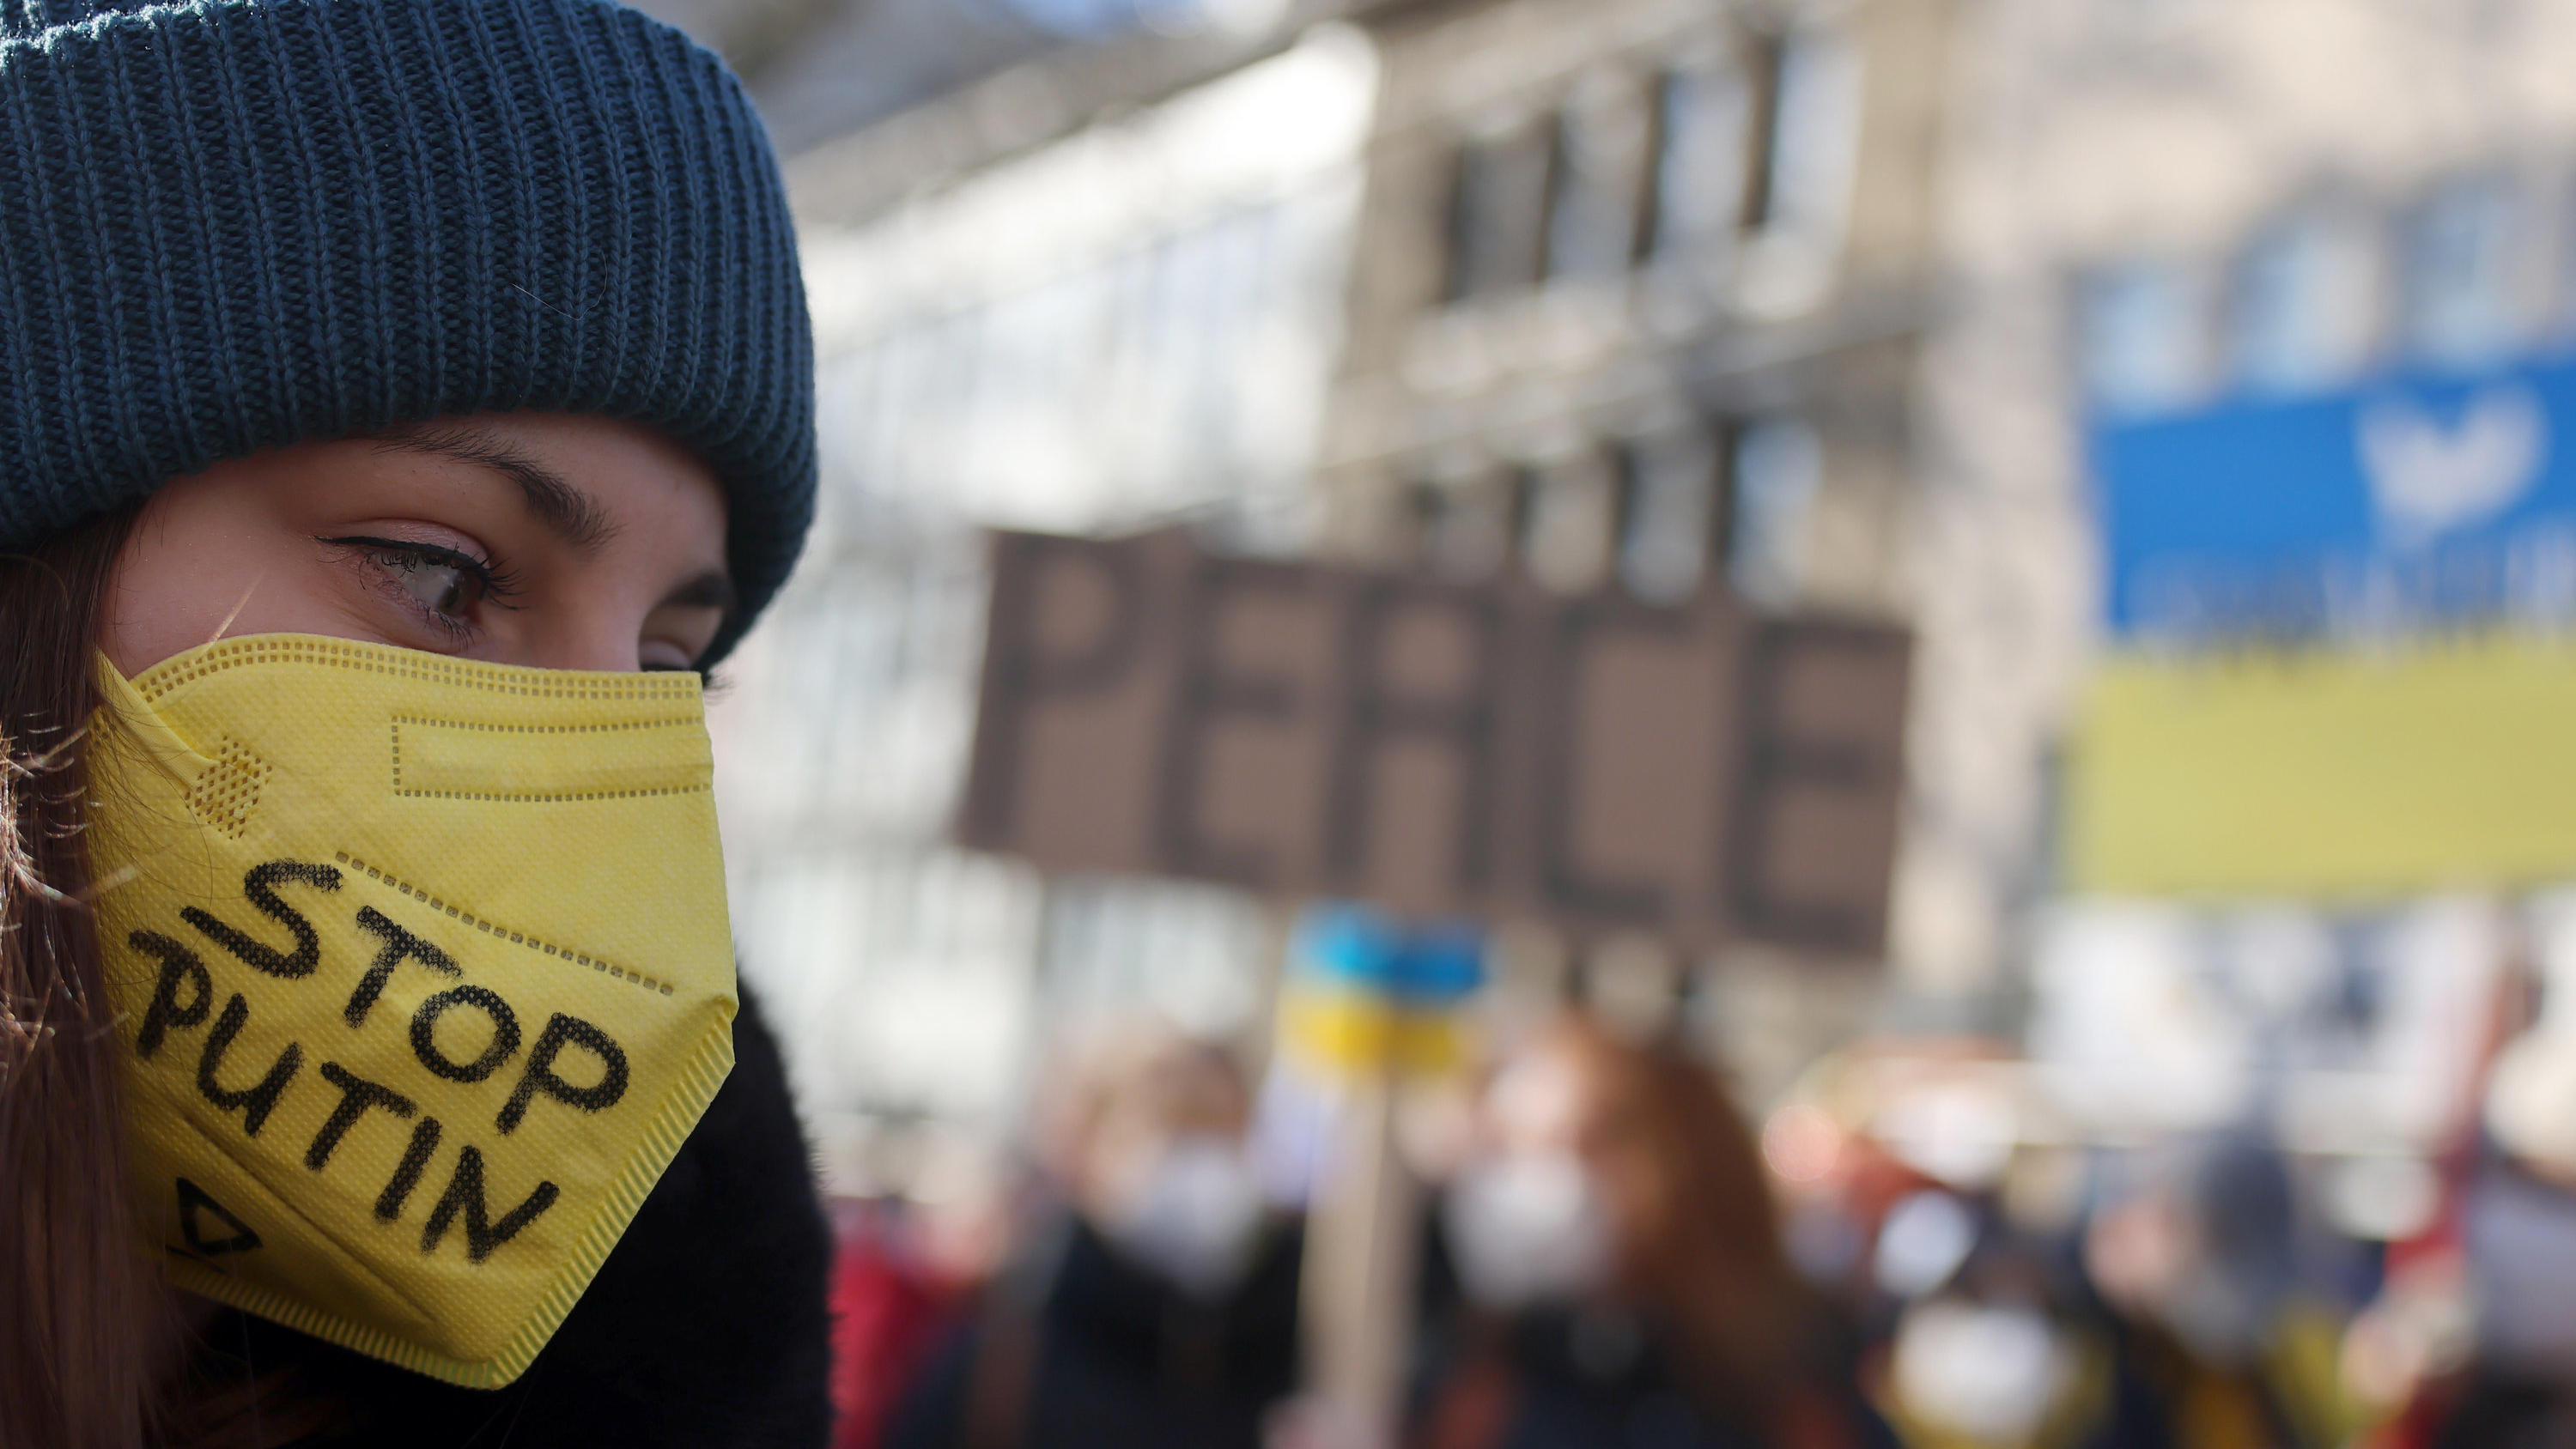 28.02.2022, Nordrhein-Westfalen, Köln: Eine Teilnehmerin der Friedensdemonstration am Rosenmontag trägt eine gelbe FFP2-Maske mit der Aufschrift "Stop Putin". Nach dem russischen Angriff auf die Ukraine wurde das Rosenmontagsfest abgesagt, stattdesse